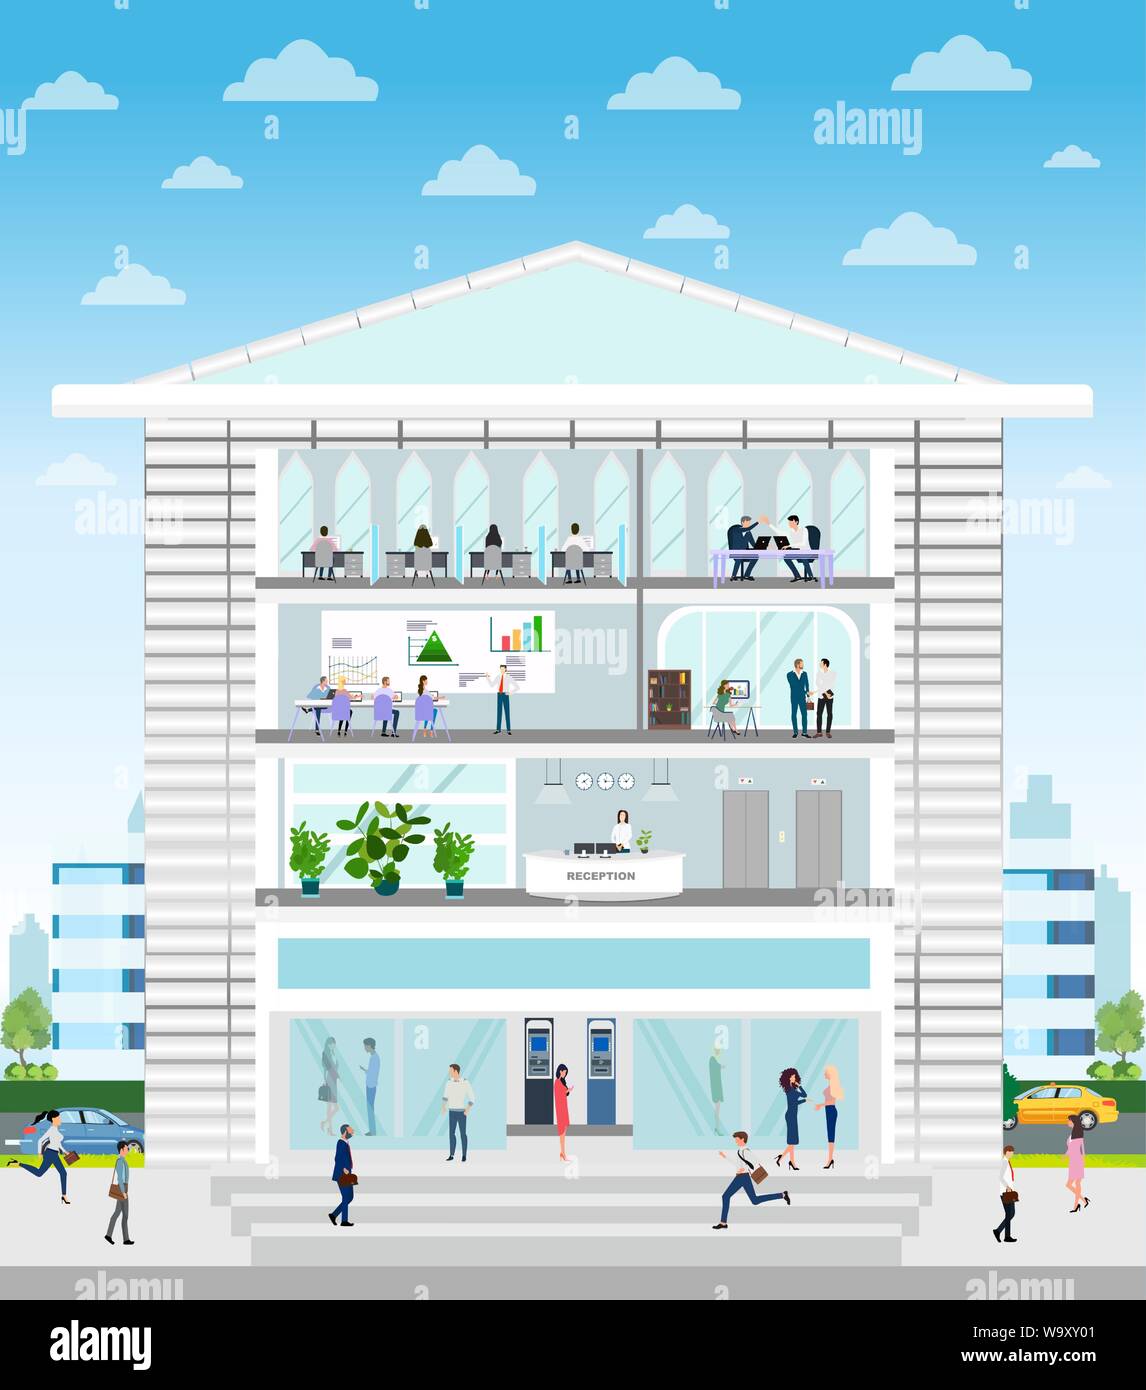 Vektor eines Unternehmens Gebäude mit Rezeption, Büro, Konferenzraum Interieur und Mitarbeitern innerhalb der Arbeit an einem stadtbild Hintergrund Stock Vektor